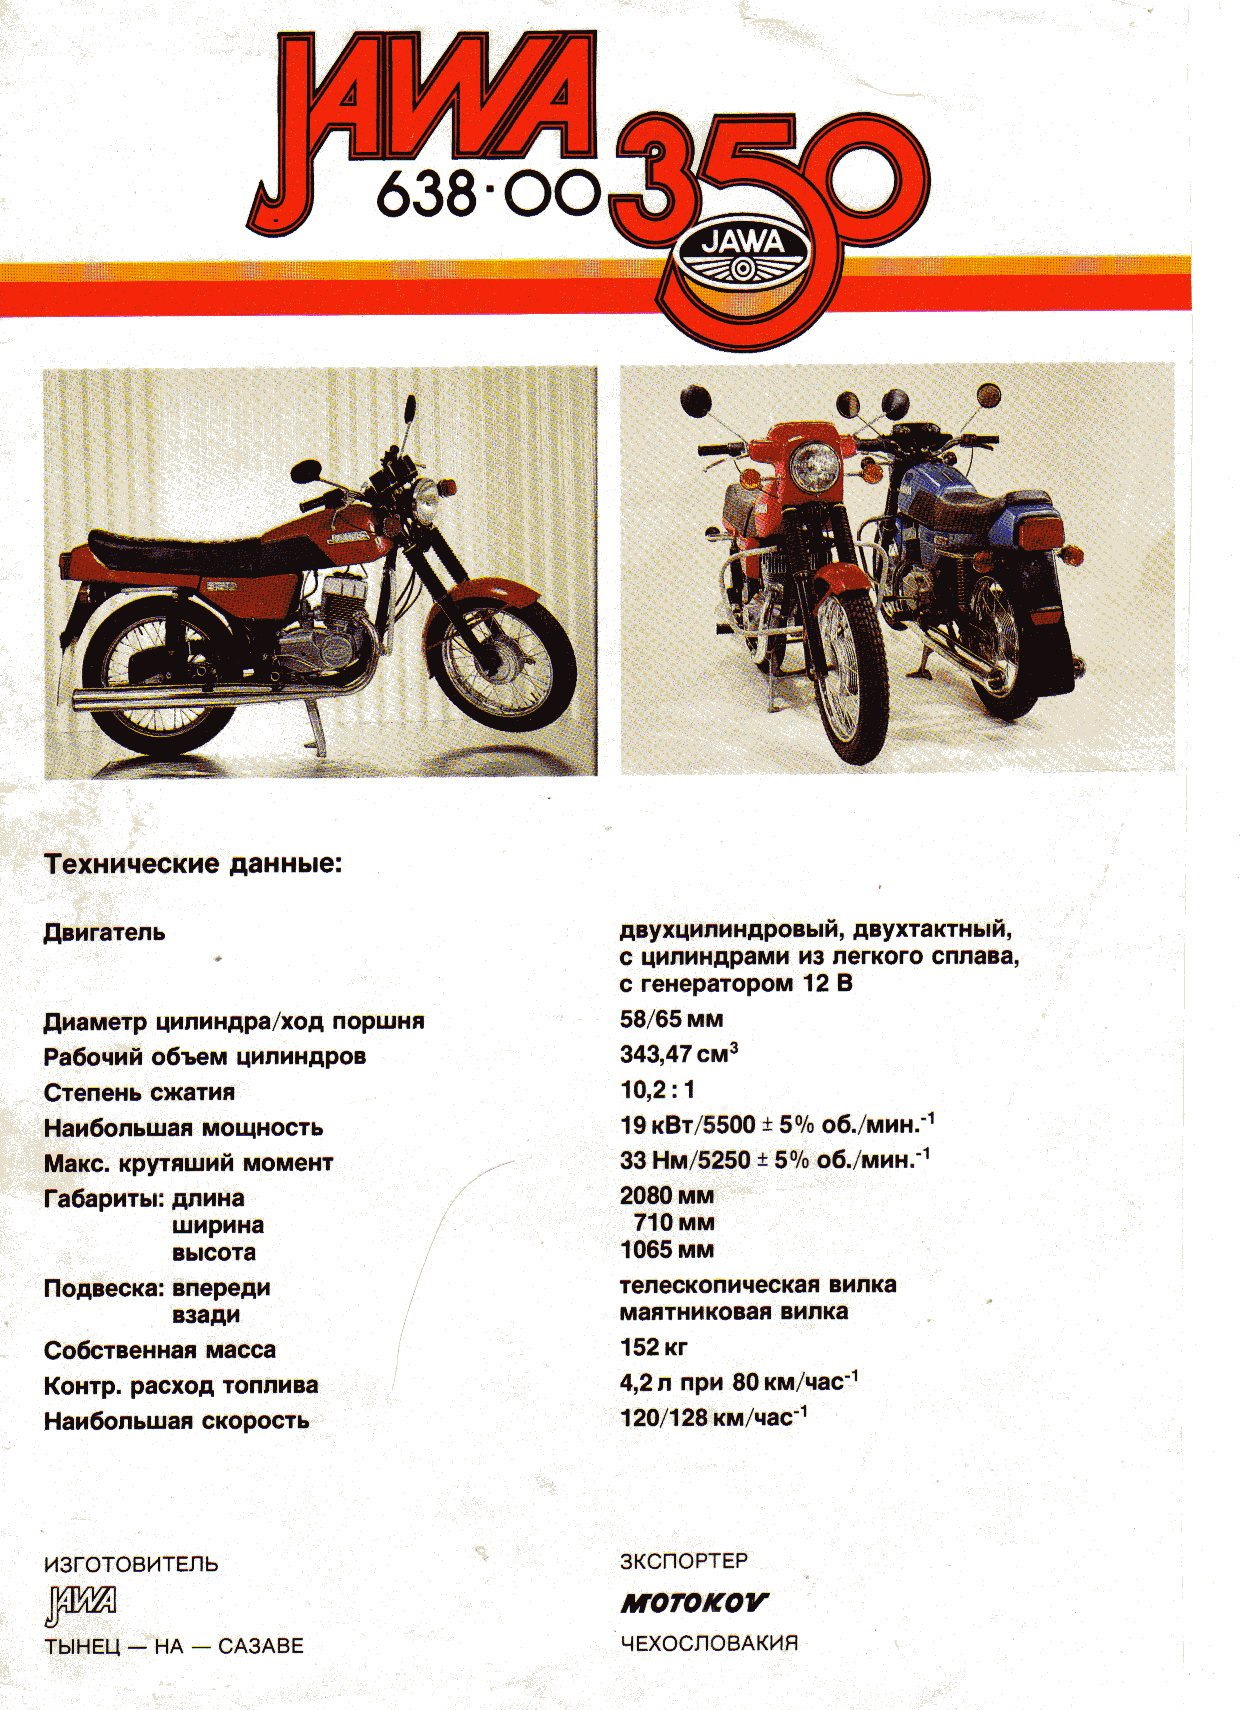 Обзор и технические характеристики мотоцикла ява 350/638